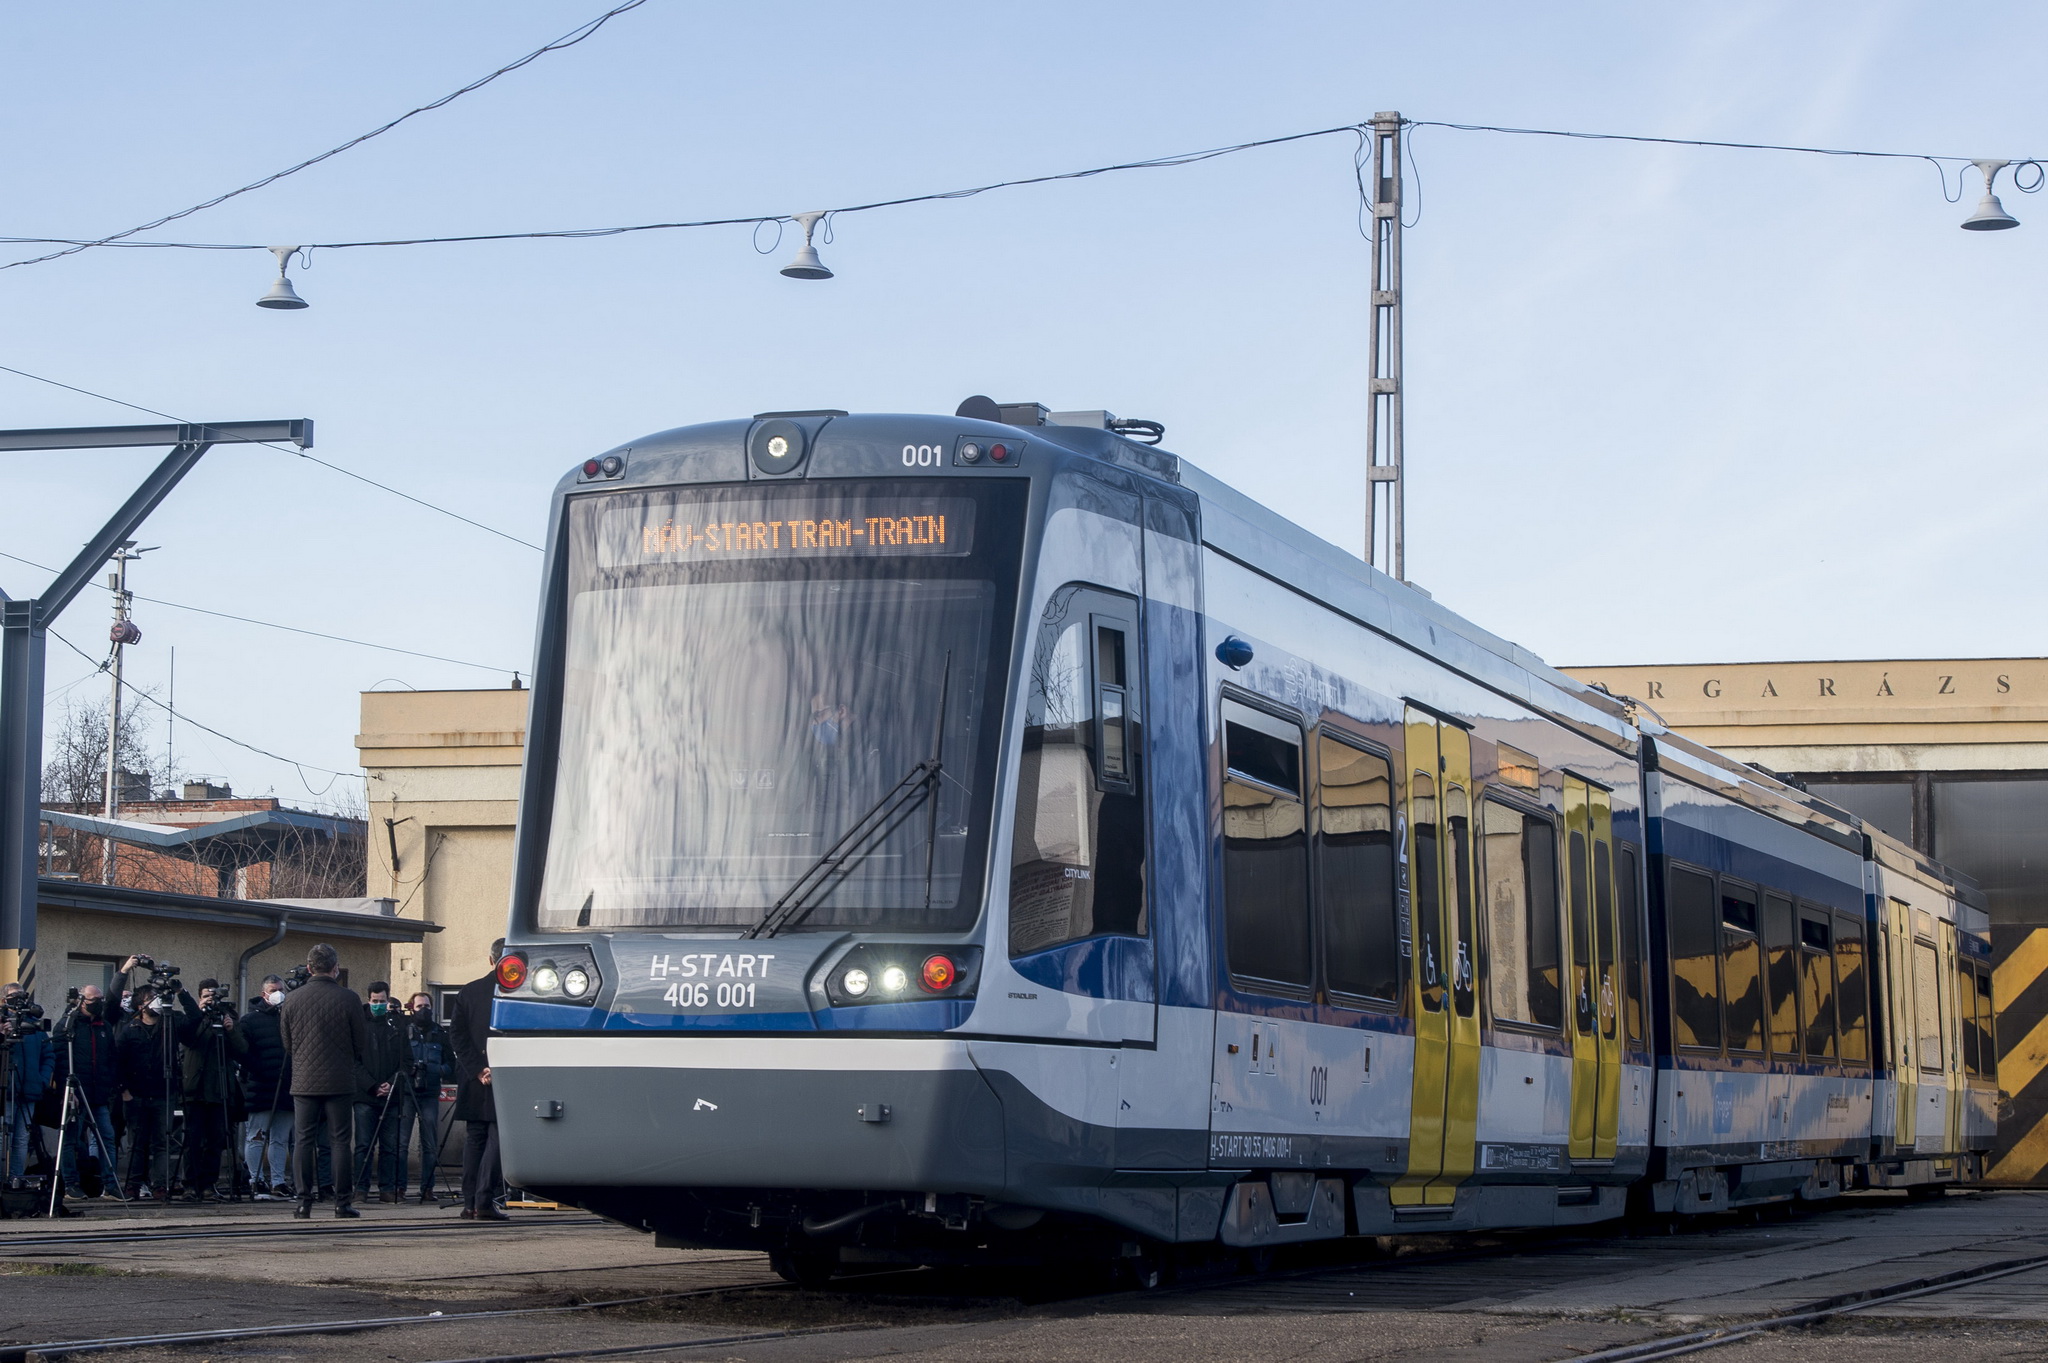 „Ellaposodtak” a szegedi tram-train kerekei, nem tudta teljesíteni a futáspróbát